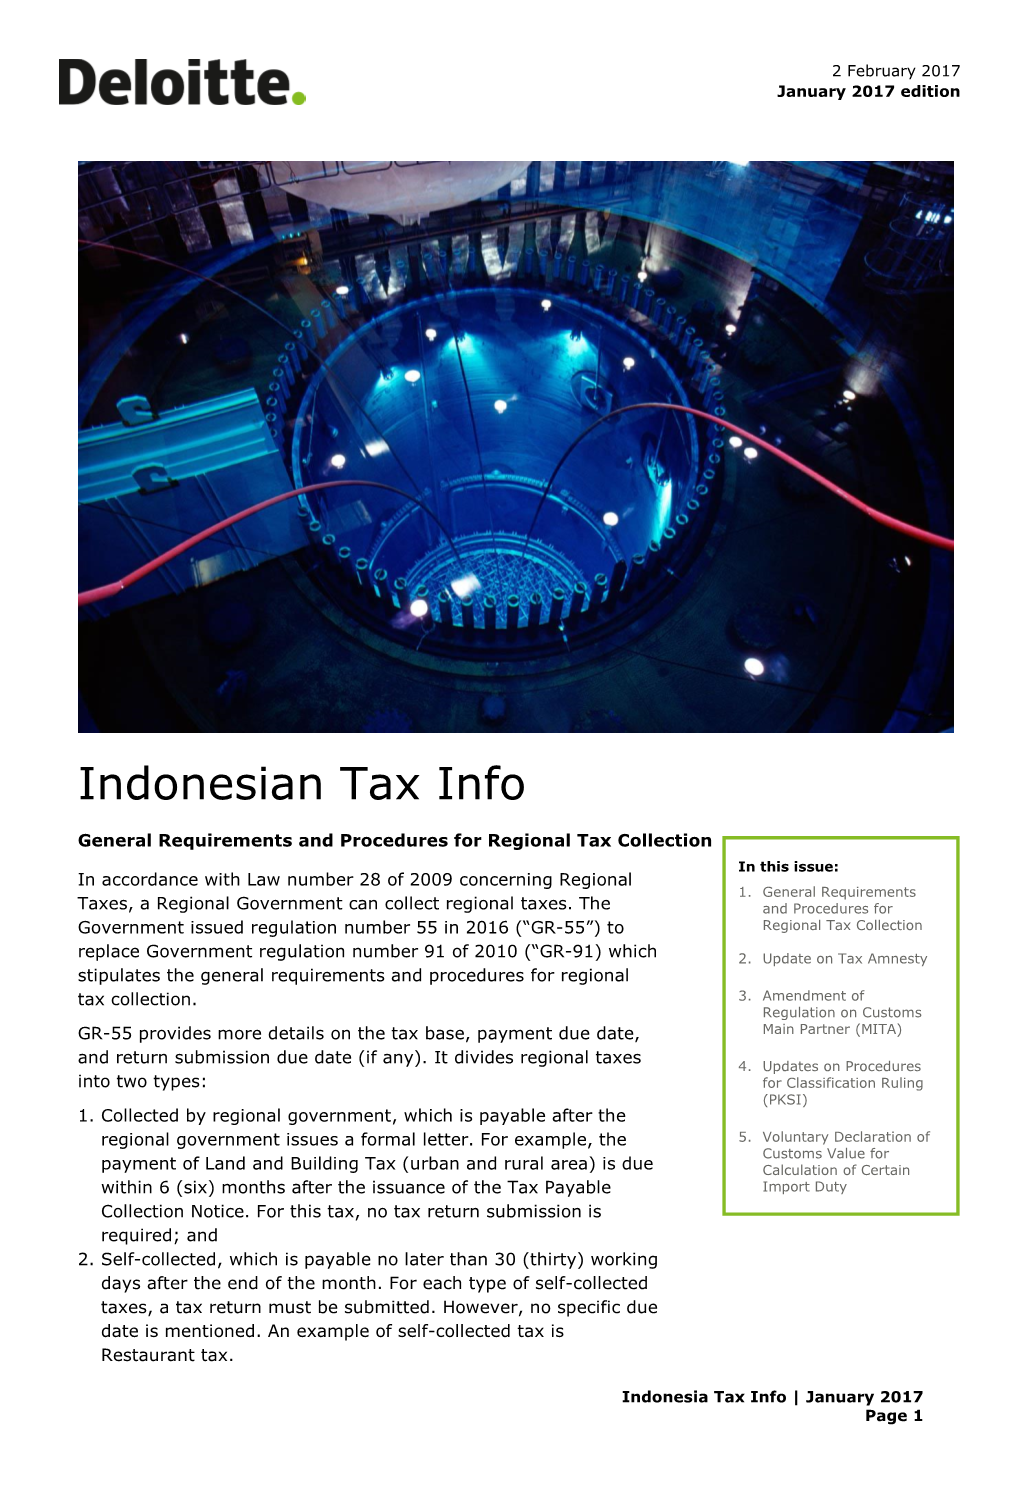 Indonesian Tax Info